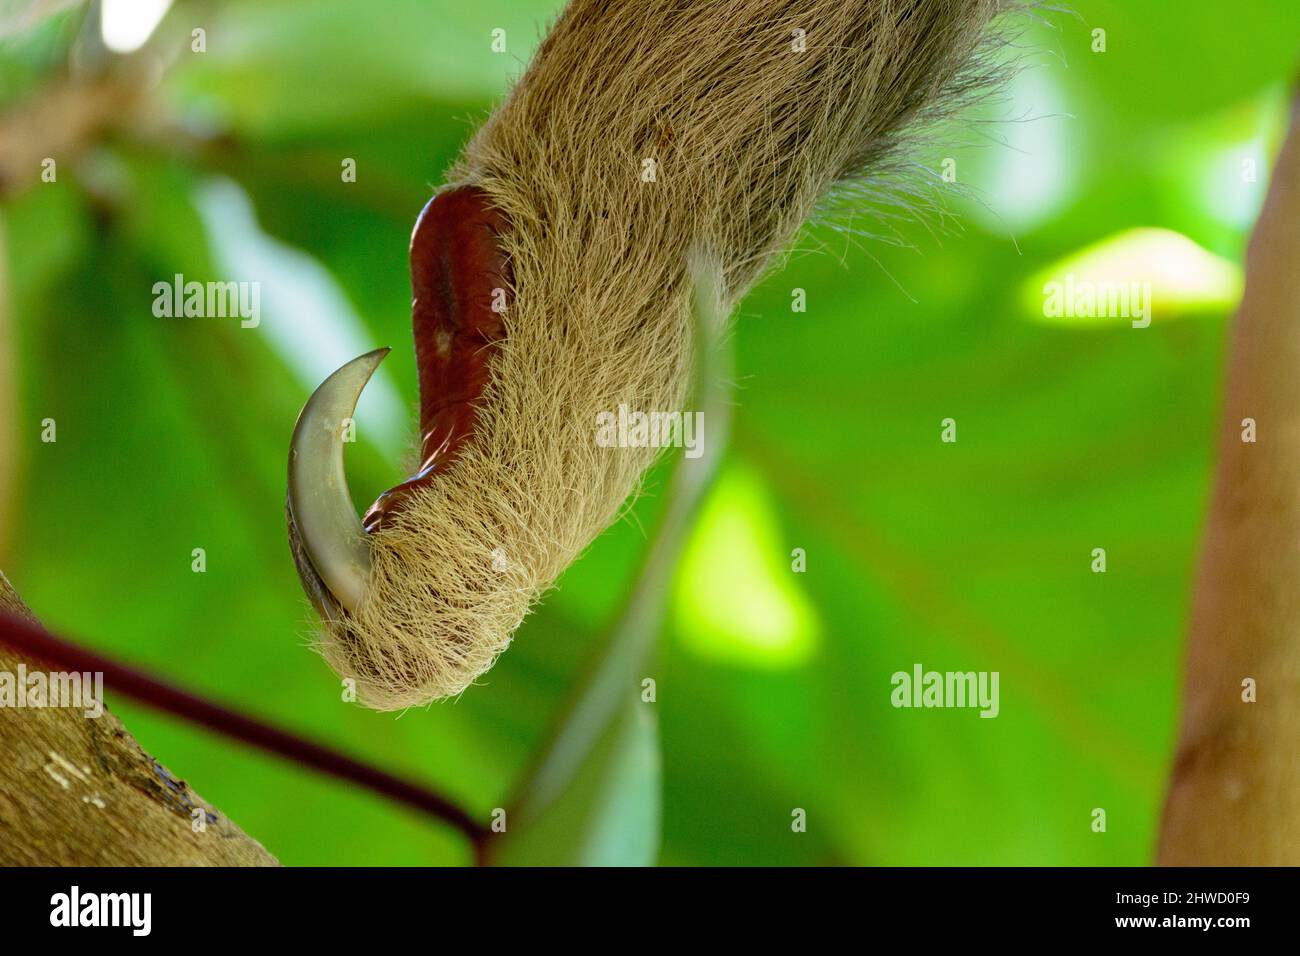 Gros plan sur le pied d'un sloth à deux doigts de Hoffmann (Choloepus hoffmanni), parc national Manuel Antonio, province de Puntarenas, Quepos, Costa Rica Banque D'Images